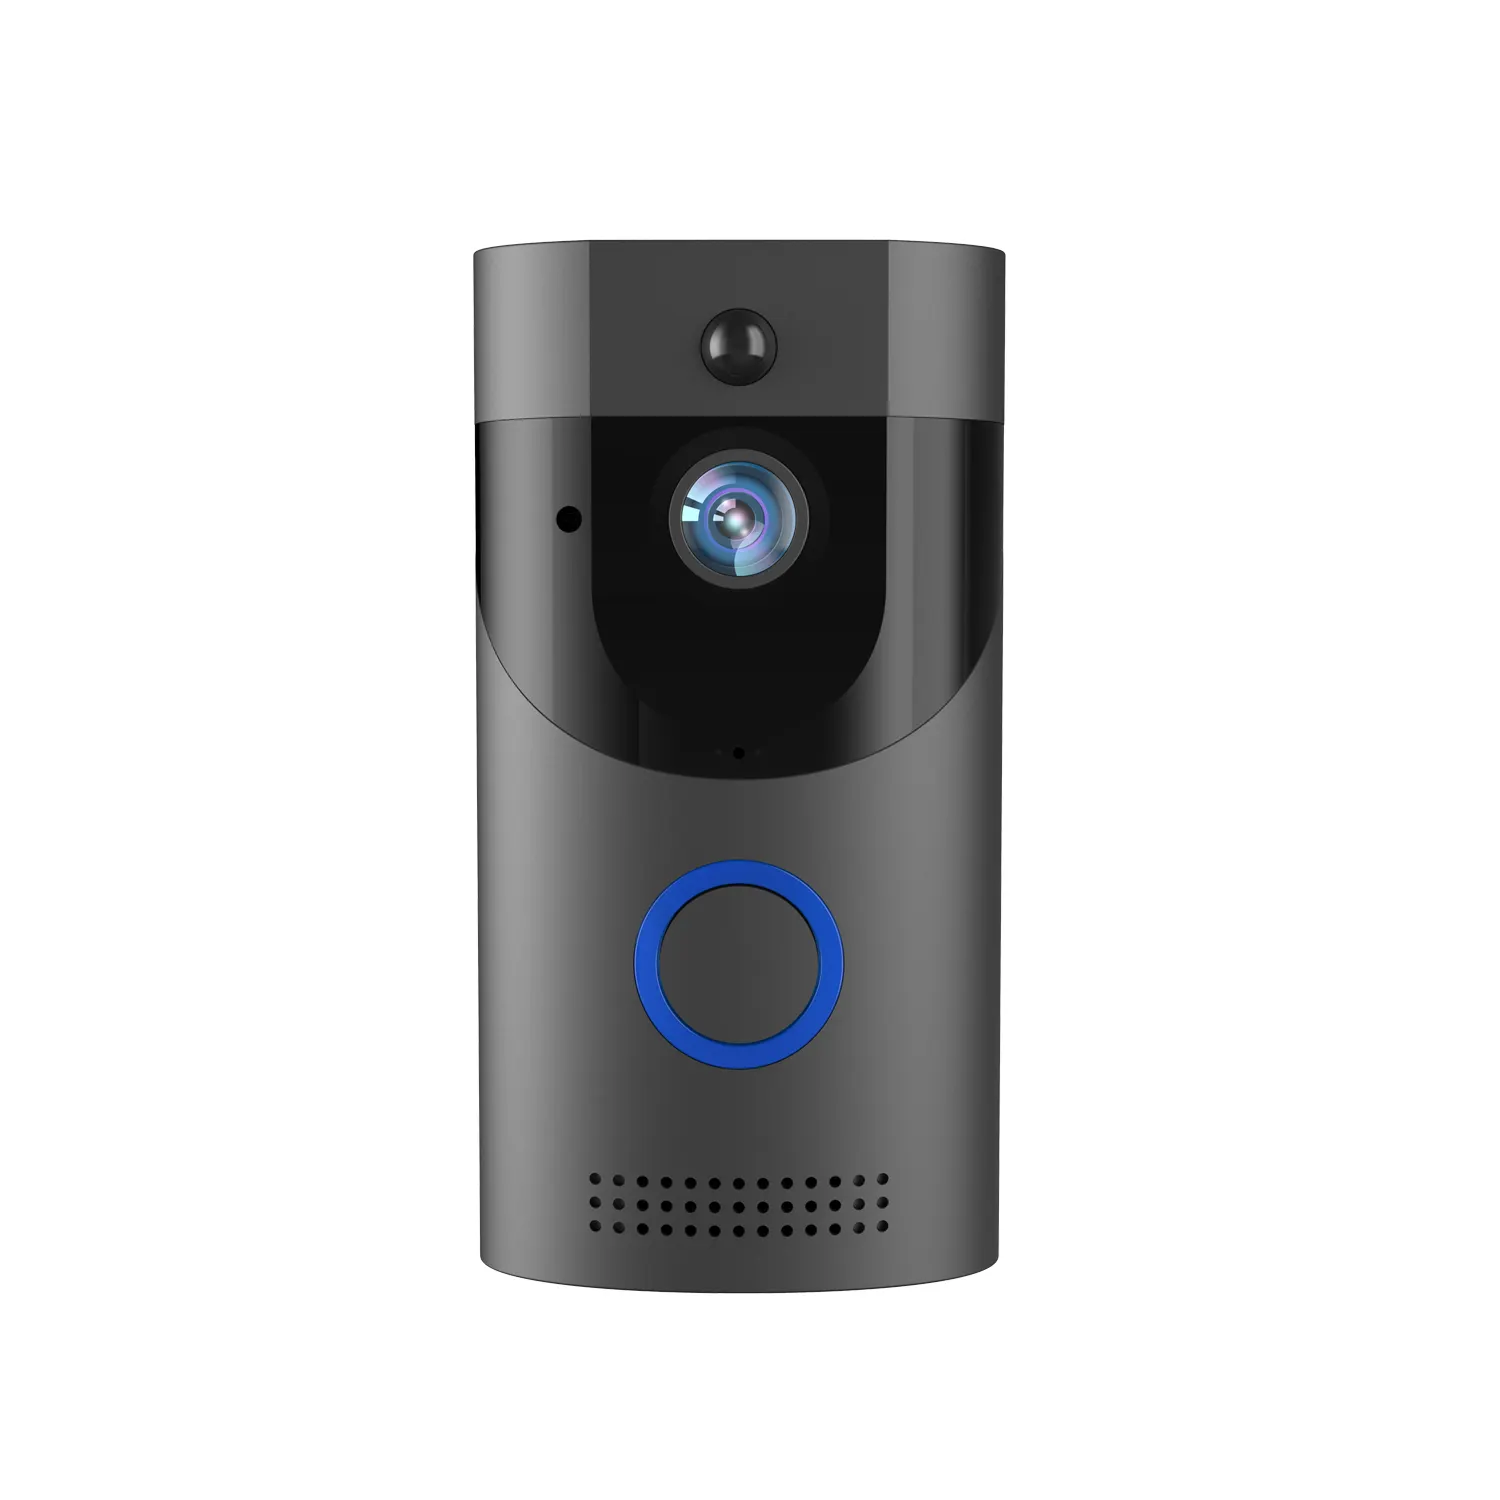 ビデオドアベル1080pWifiリングドアベルカメラ工場卸売スマートホームホームセキュリティシステム簡単インストール